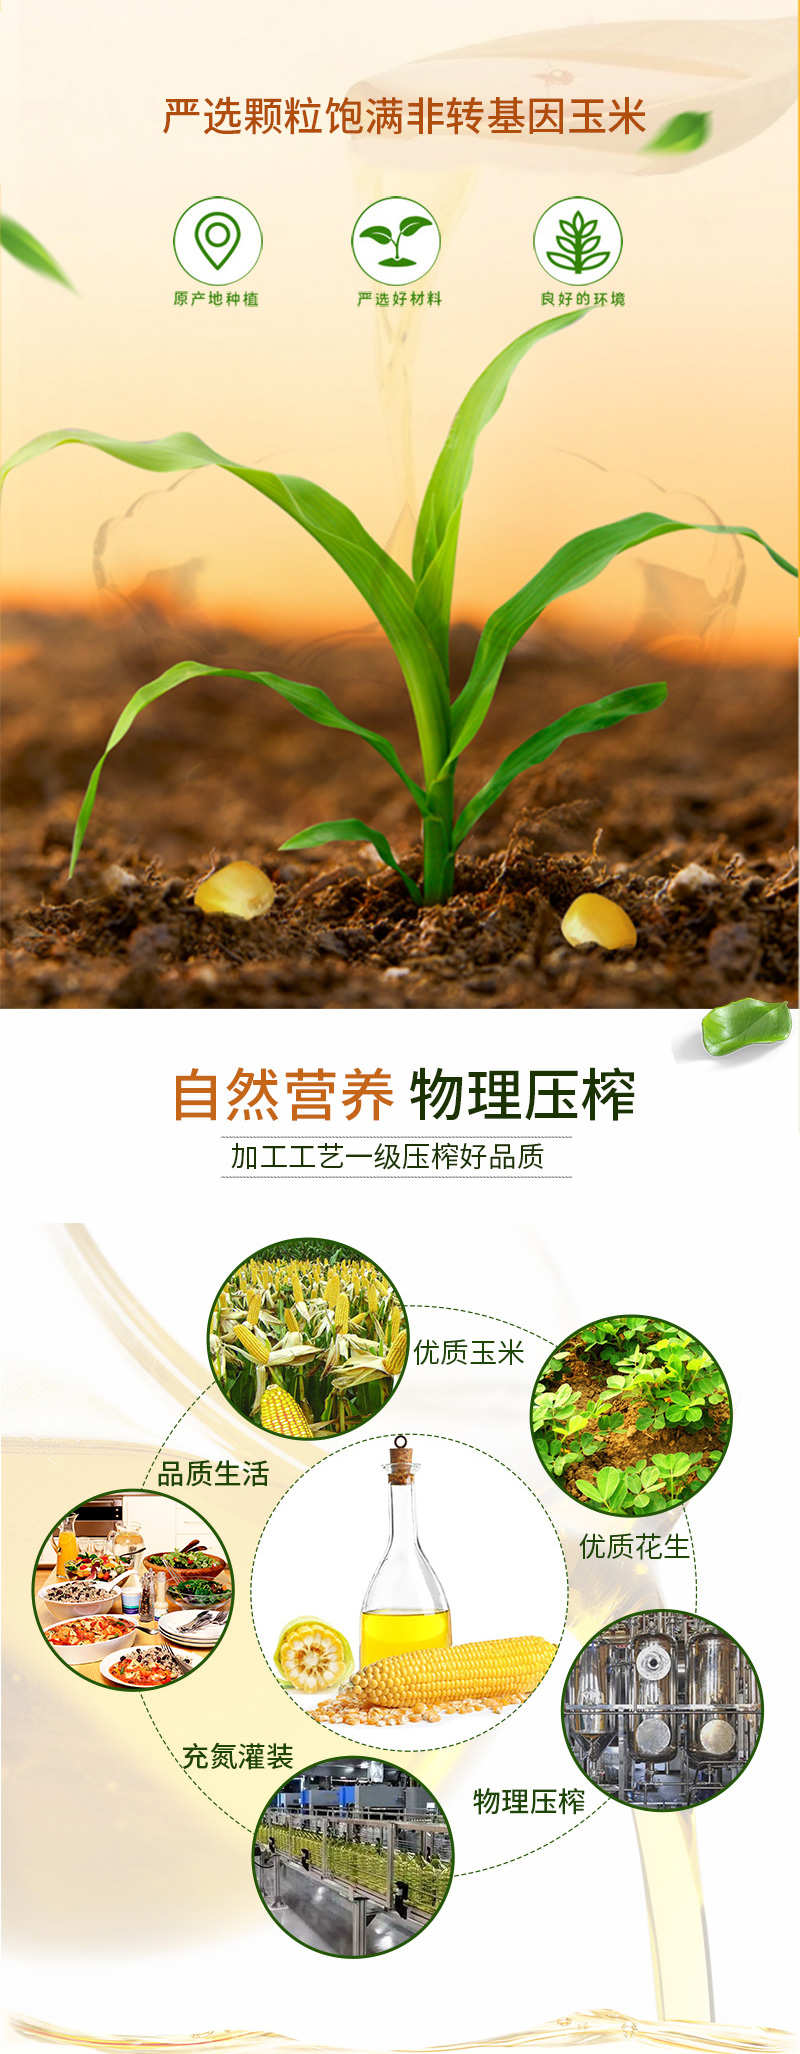 【鲁王】浓香花生油1.8L+ 压榨玉米油1.8L（绿色健康）